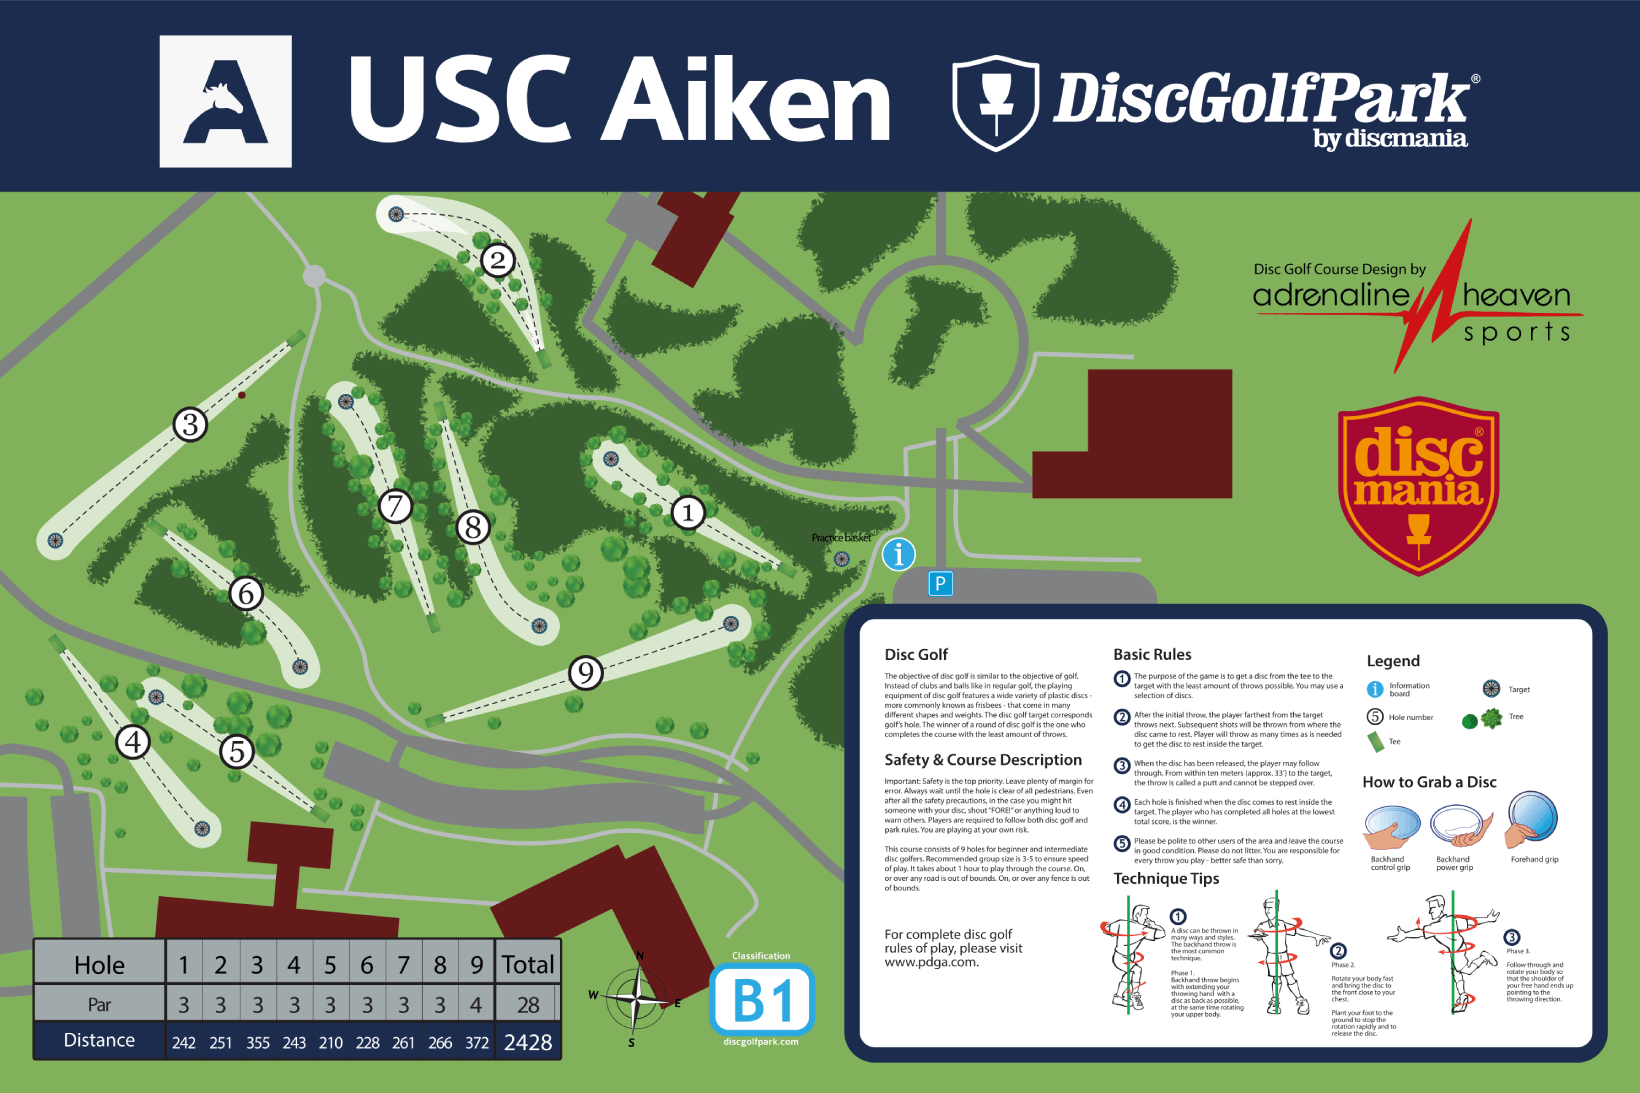 USC Aiken disc golf